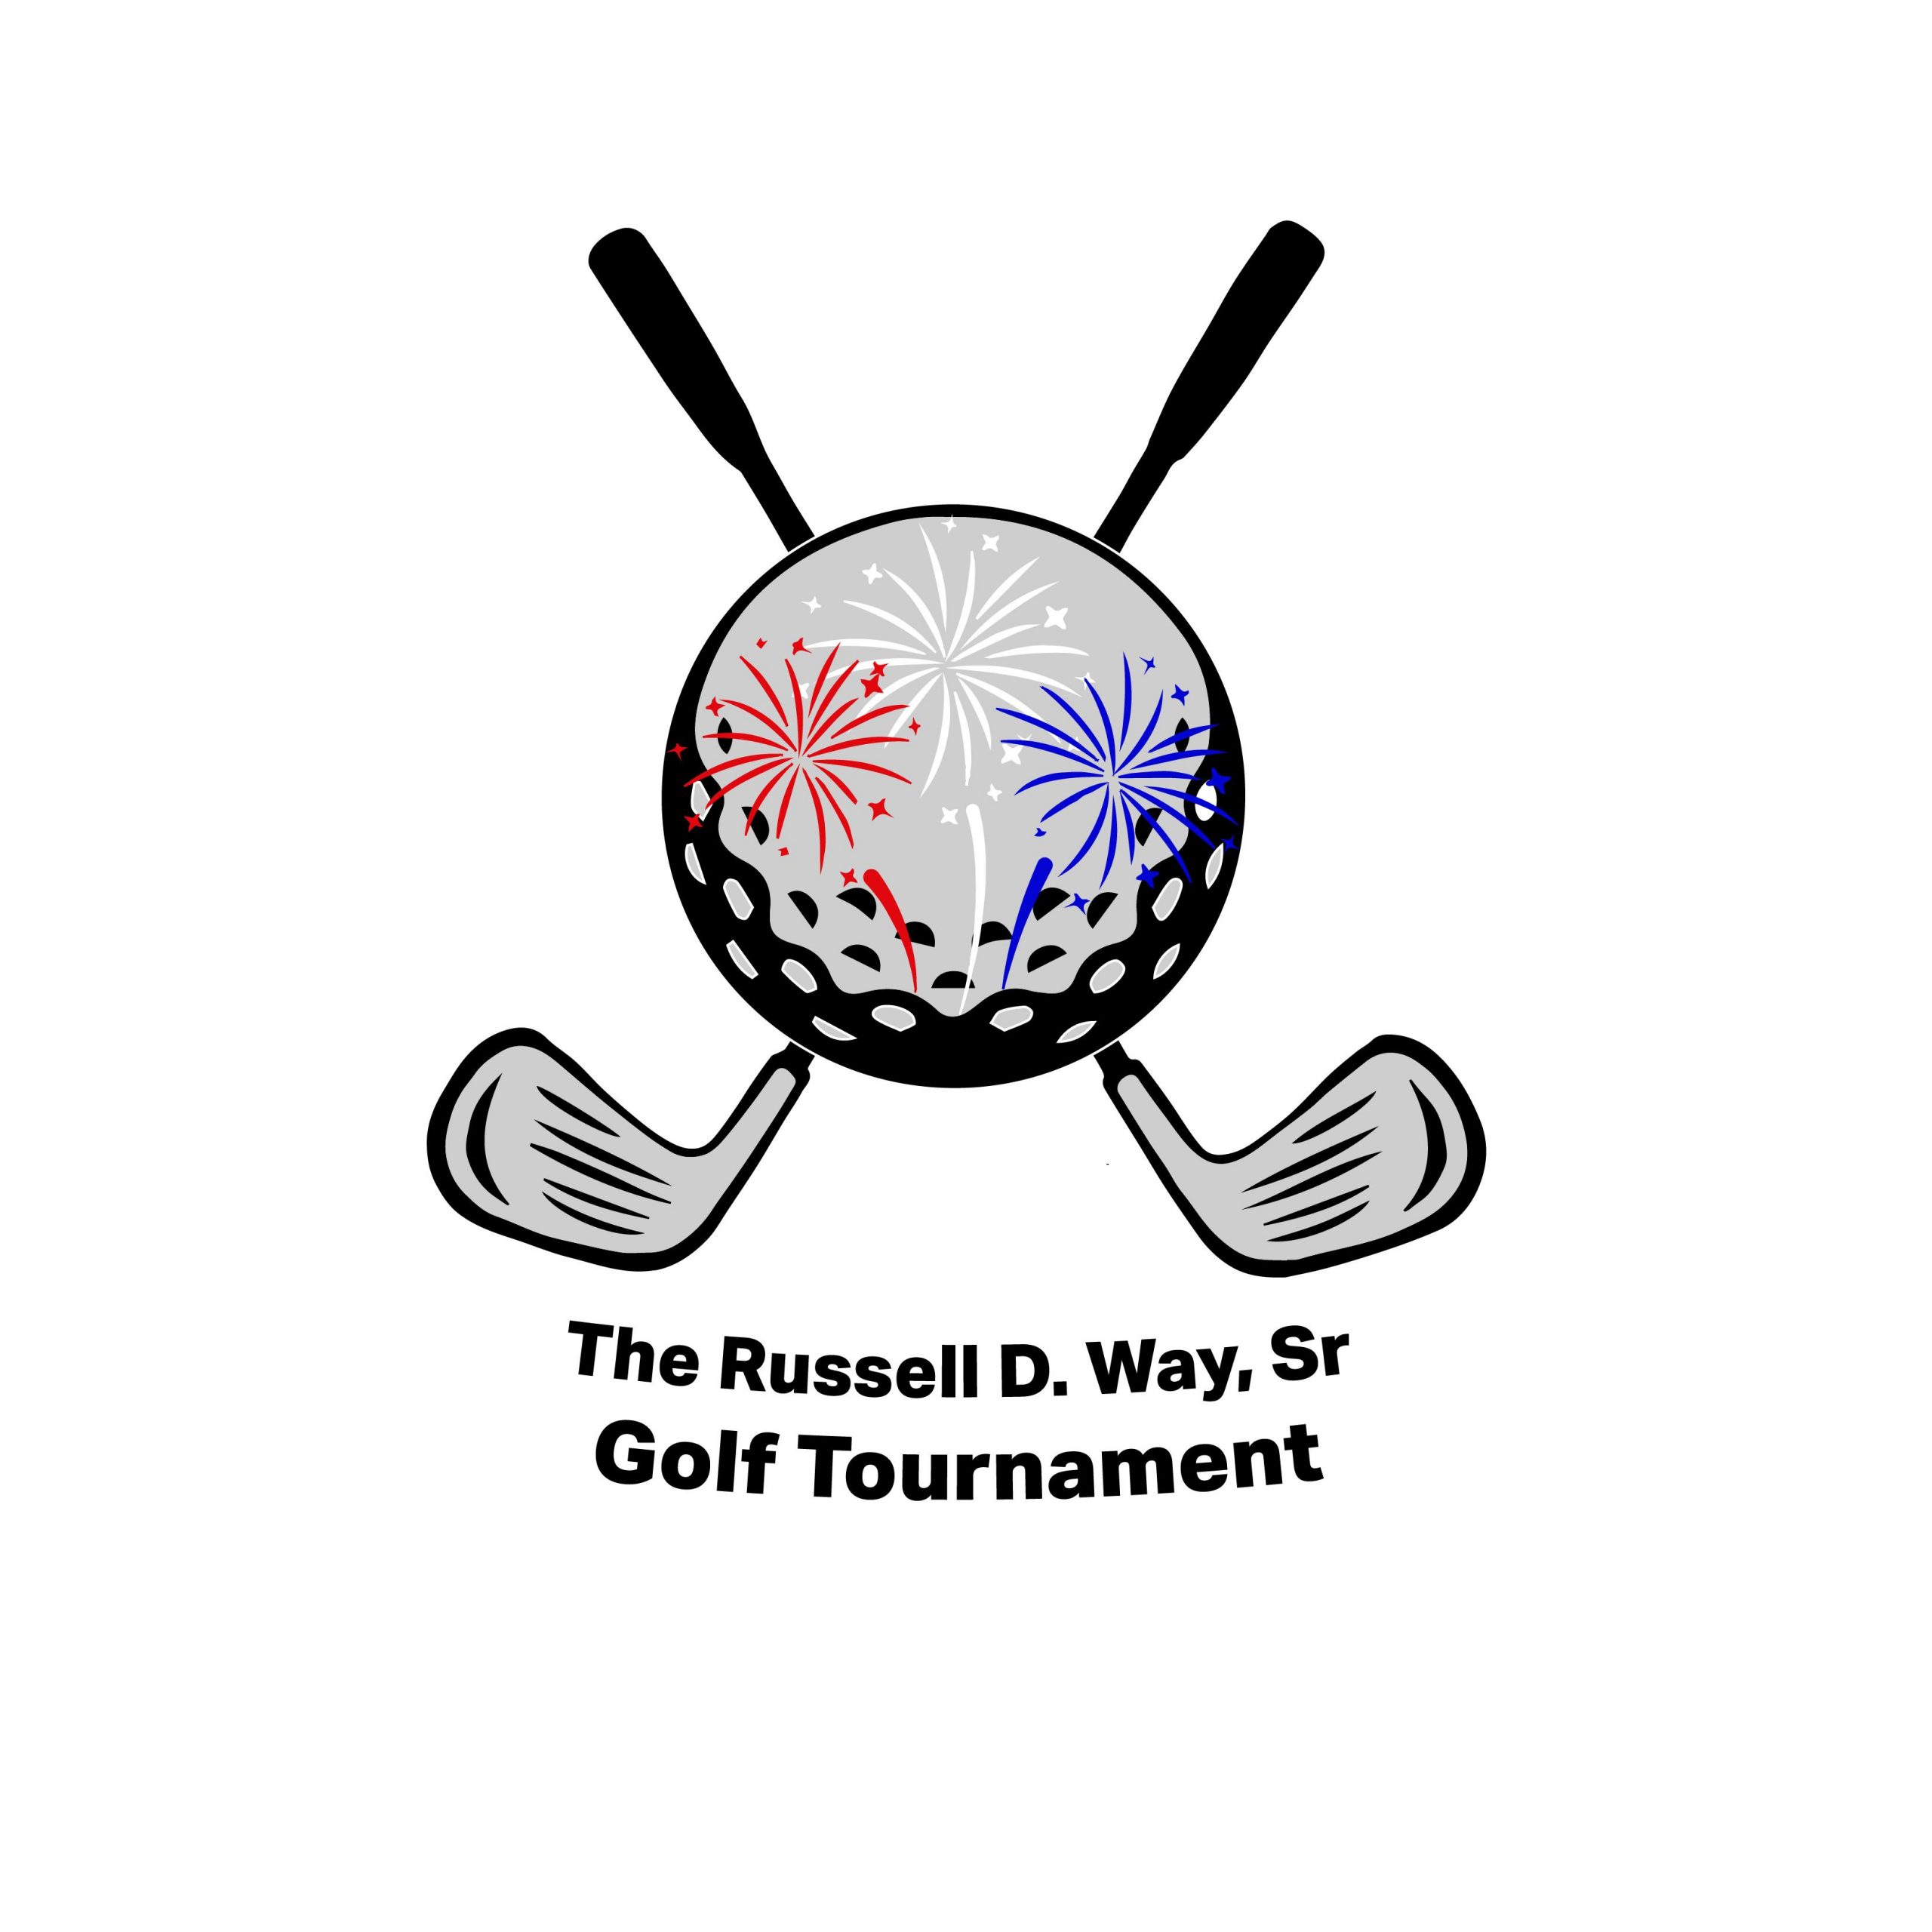 The Russell D. Way, Sr. Golf Tournament